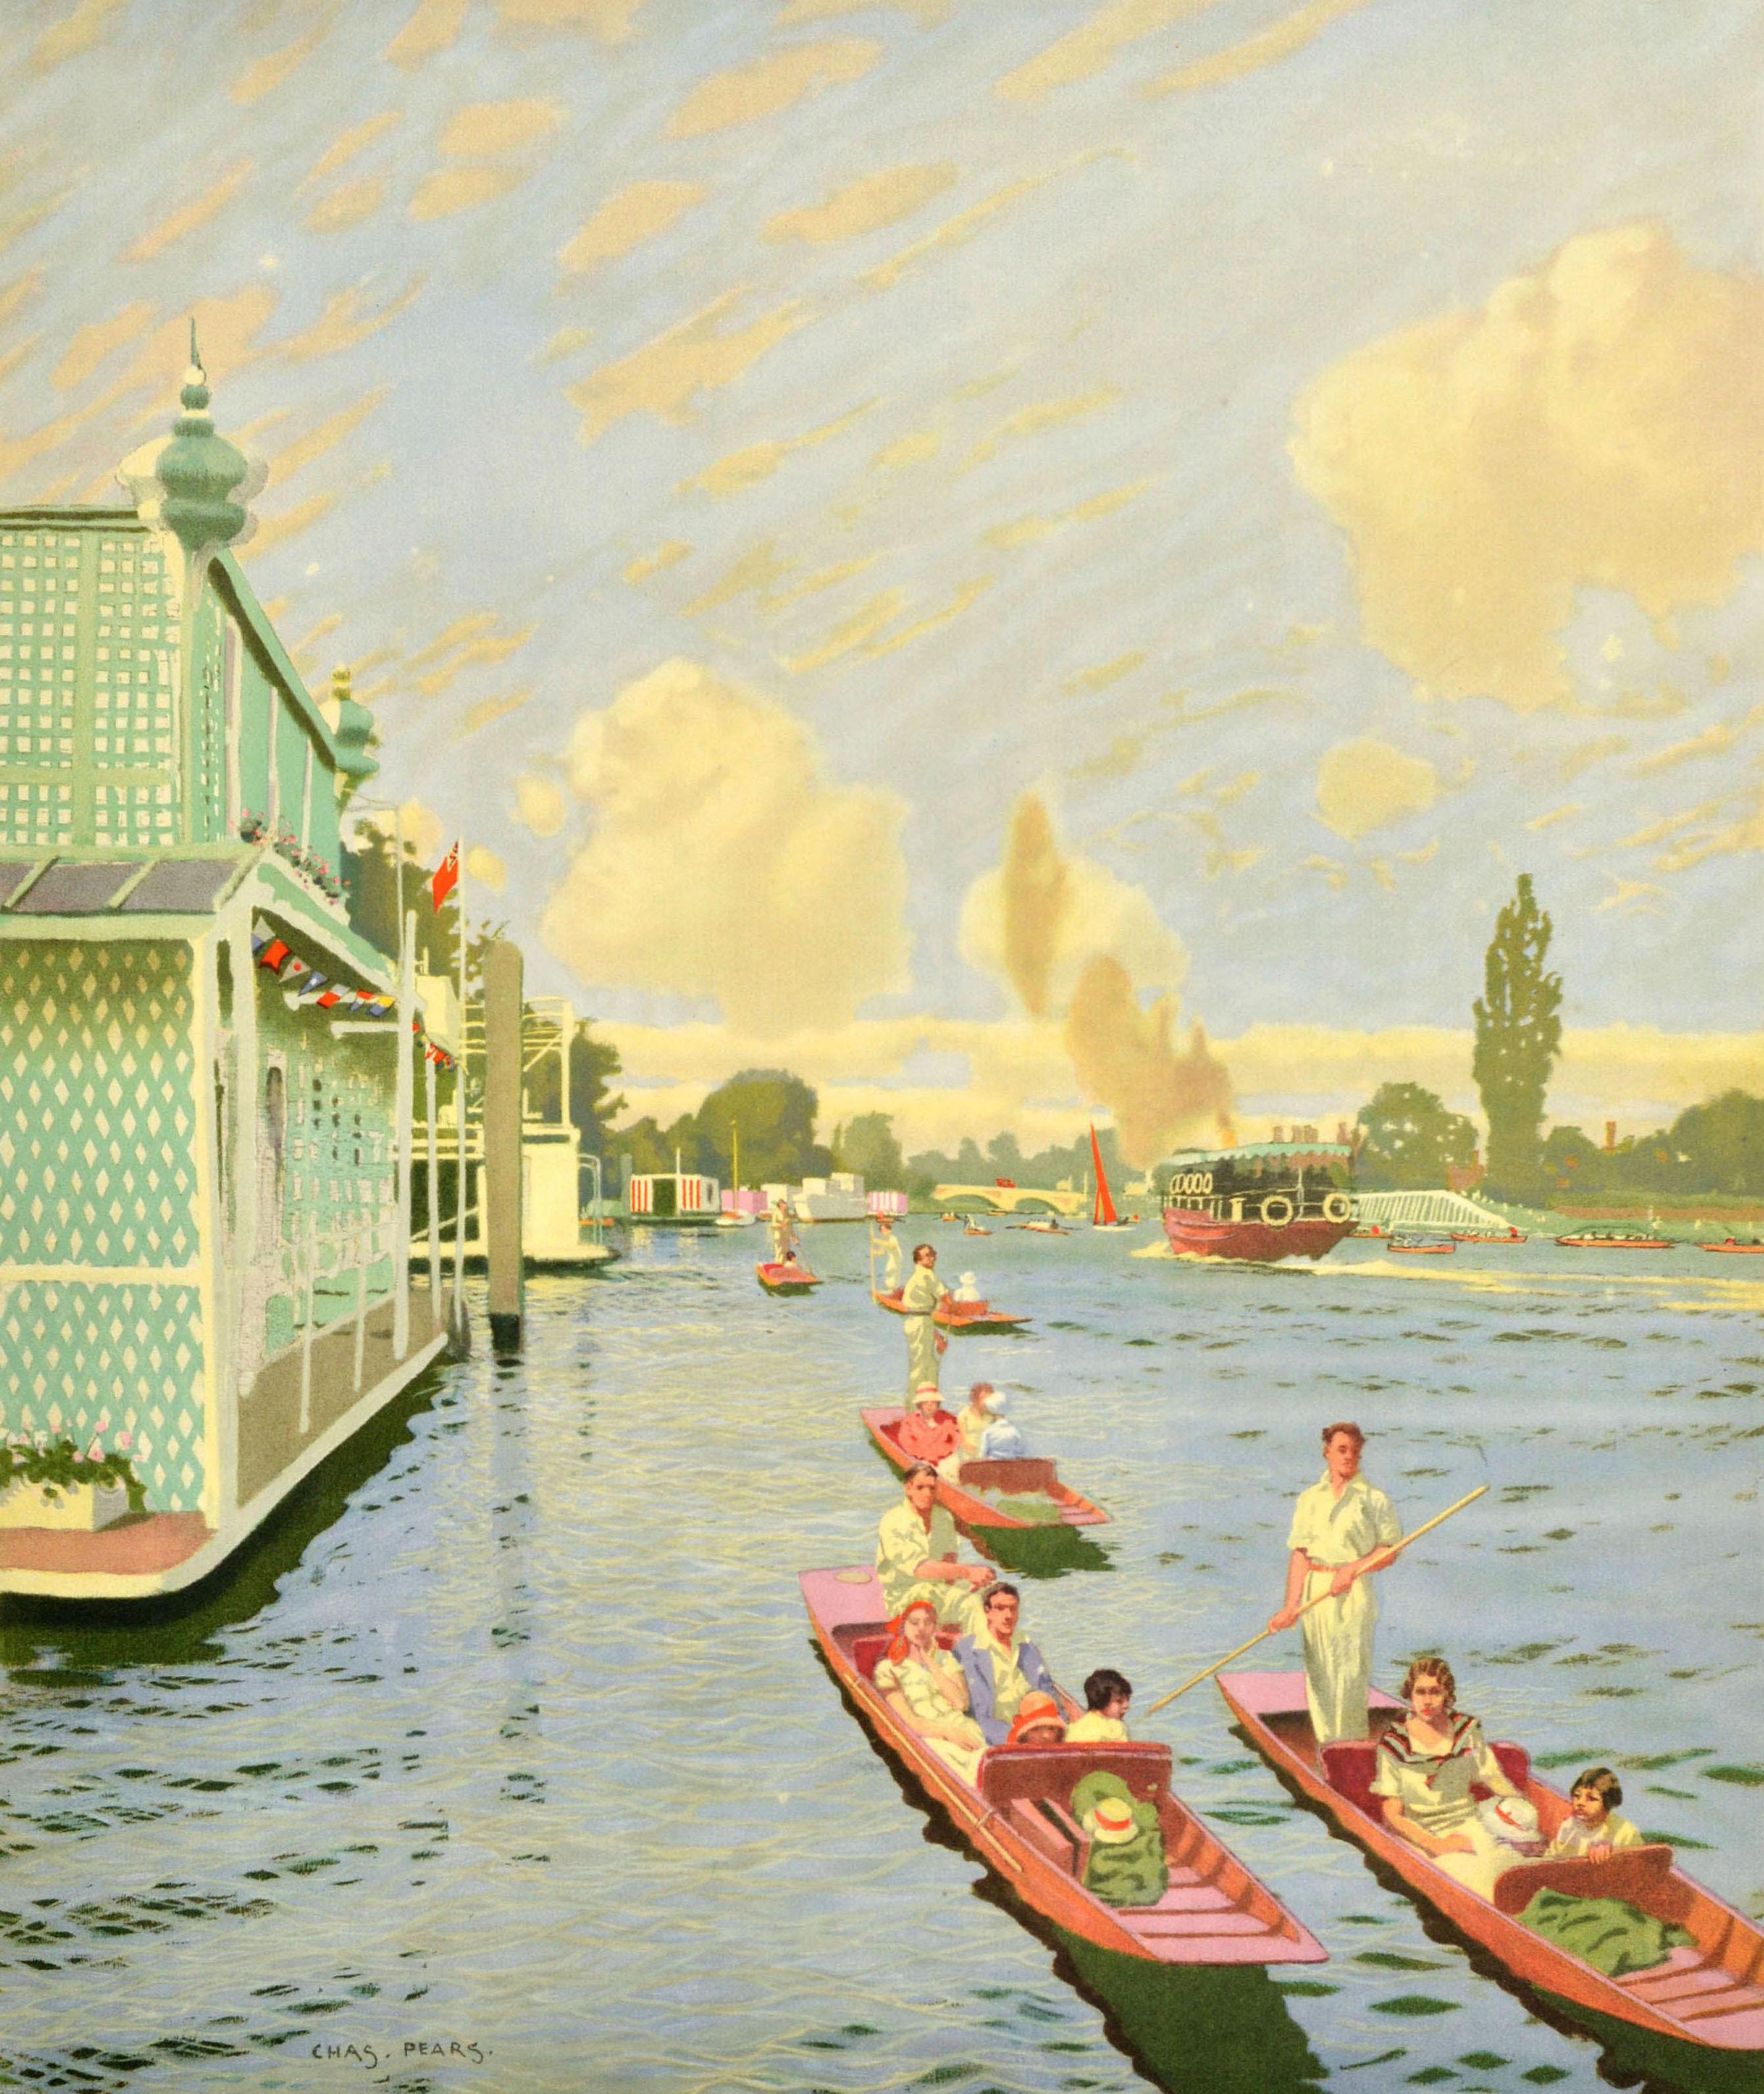 Affiche publicitaire originale de London Transport pour Walton Twickenham Windsor comprenant une superbe illustration du peintre britannique Charles Pears (1873-1958) montrant des personnes en vêtements blancs d'été faisant du bateau le long de la